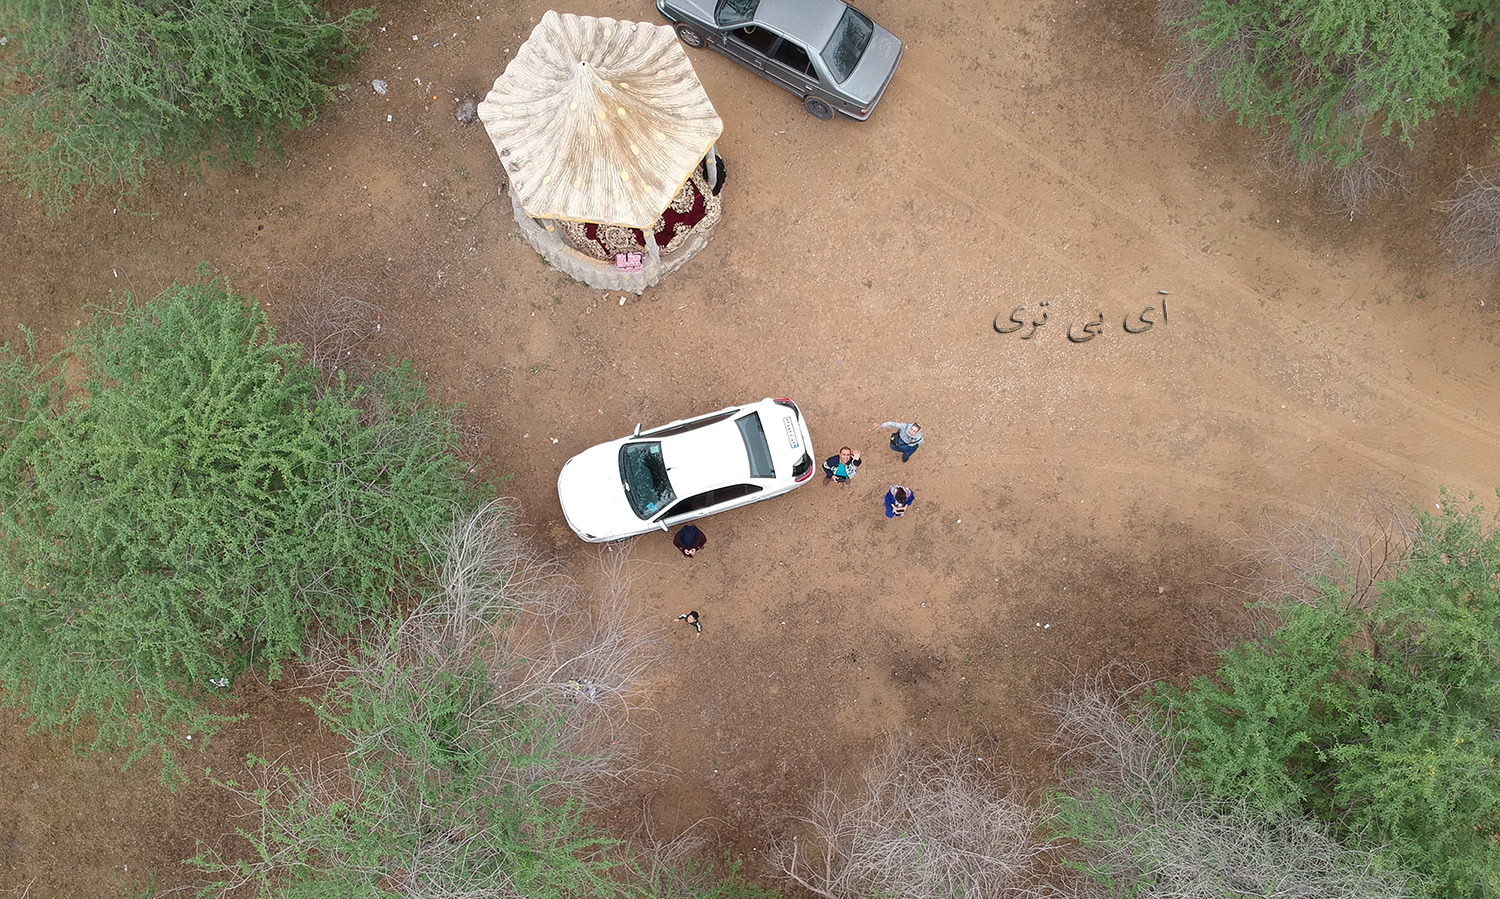 پارک جنگلی چاهکوتاه بوشهر تصویر از پهباد دی جی اسپارک dji spark